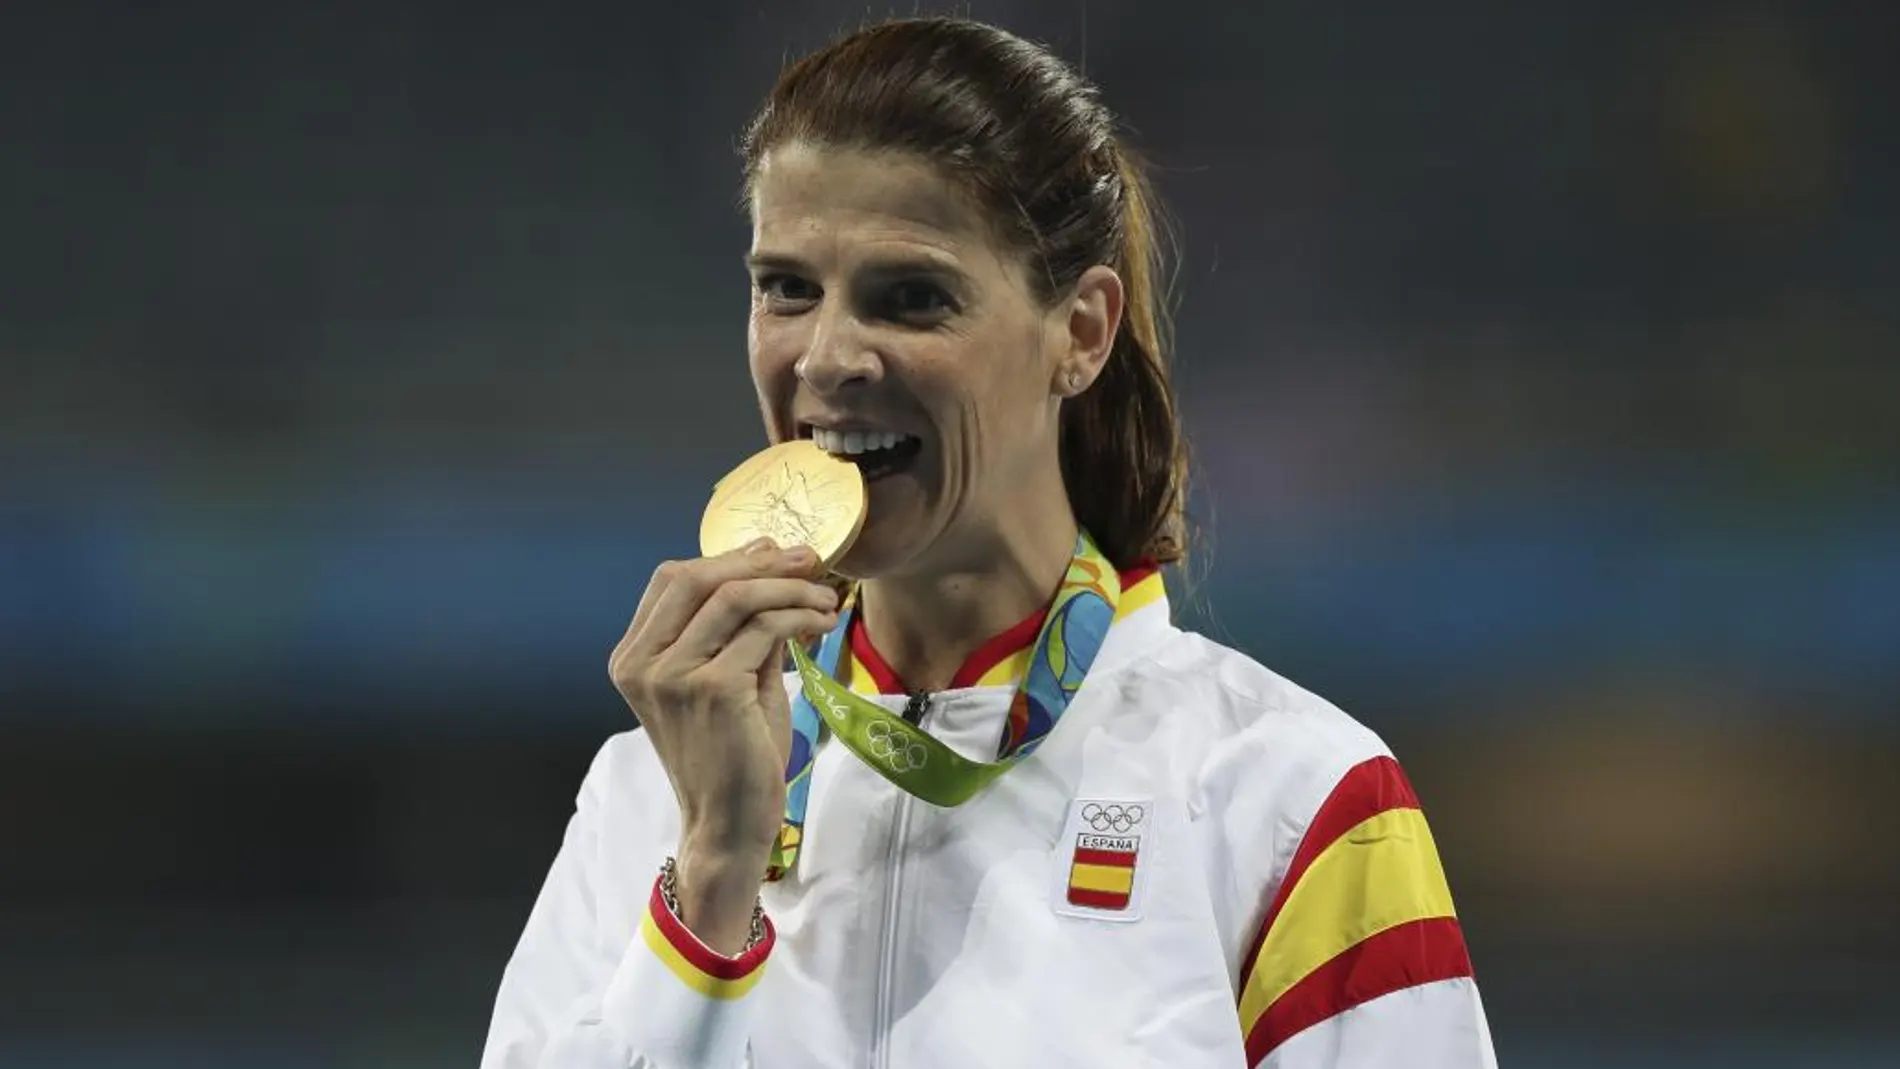 Ruth Beitia celebra el podio la medalla de oro